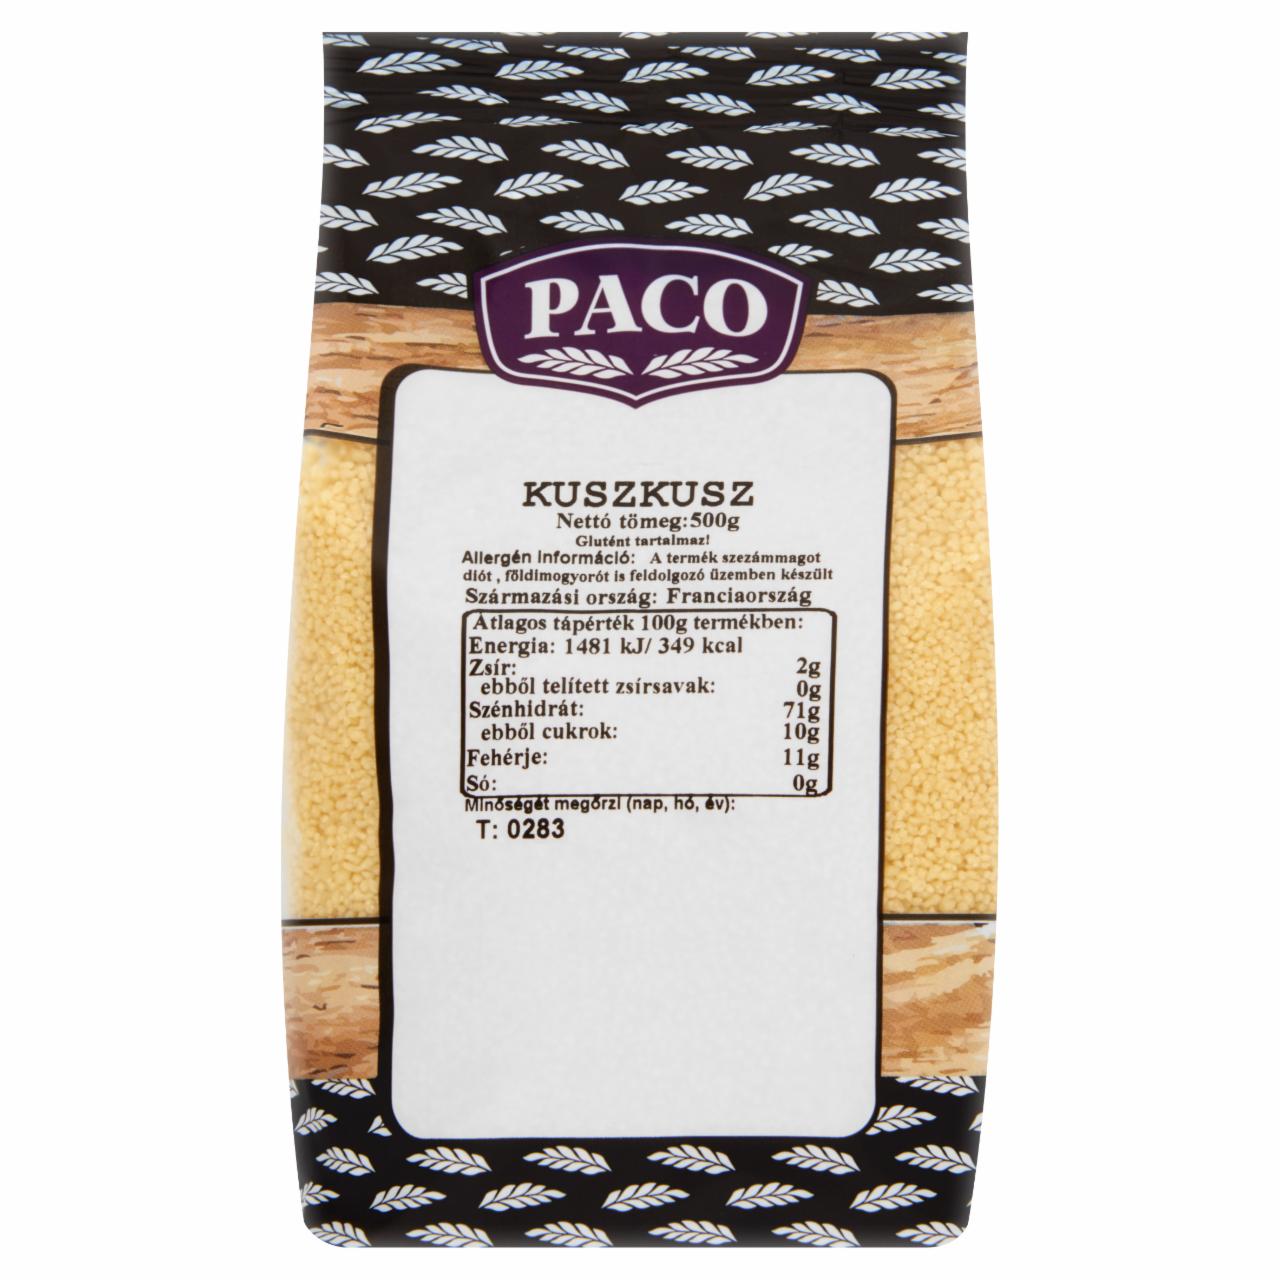 Képek - Paco étkezési kuszkusz 500 g